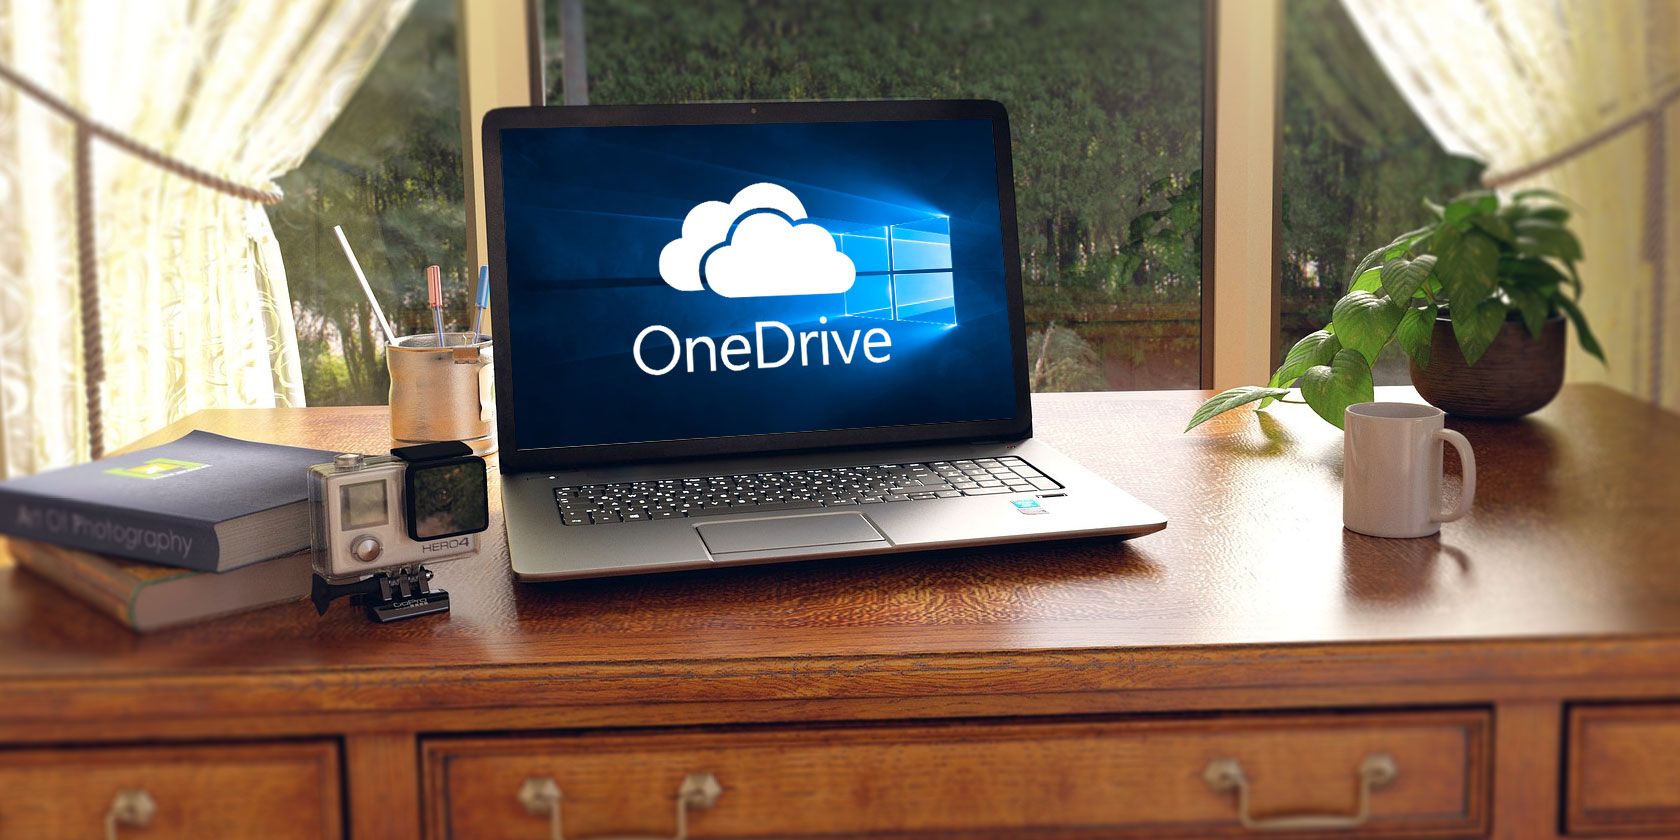 Windows 10 笔记本电脑上的 OneDrive 徽标